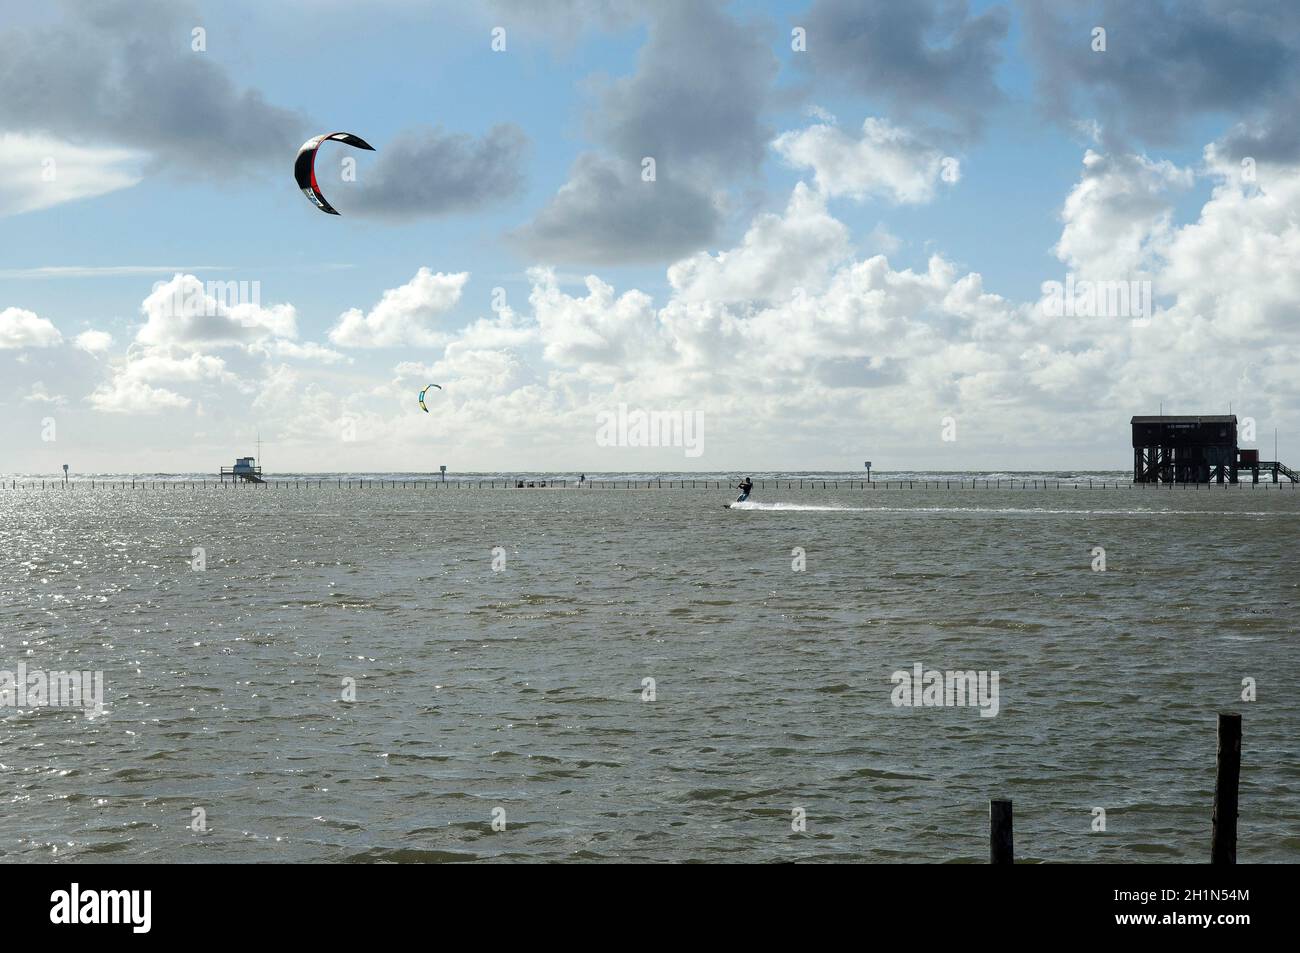 Kitesurfer, Lenkdrachensegeln, Sankt Peter-Ording Stock Photo